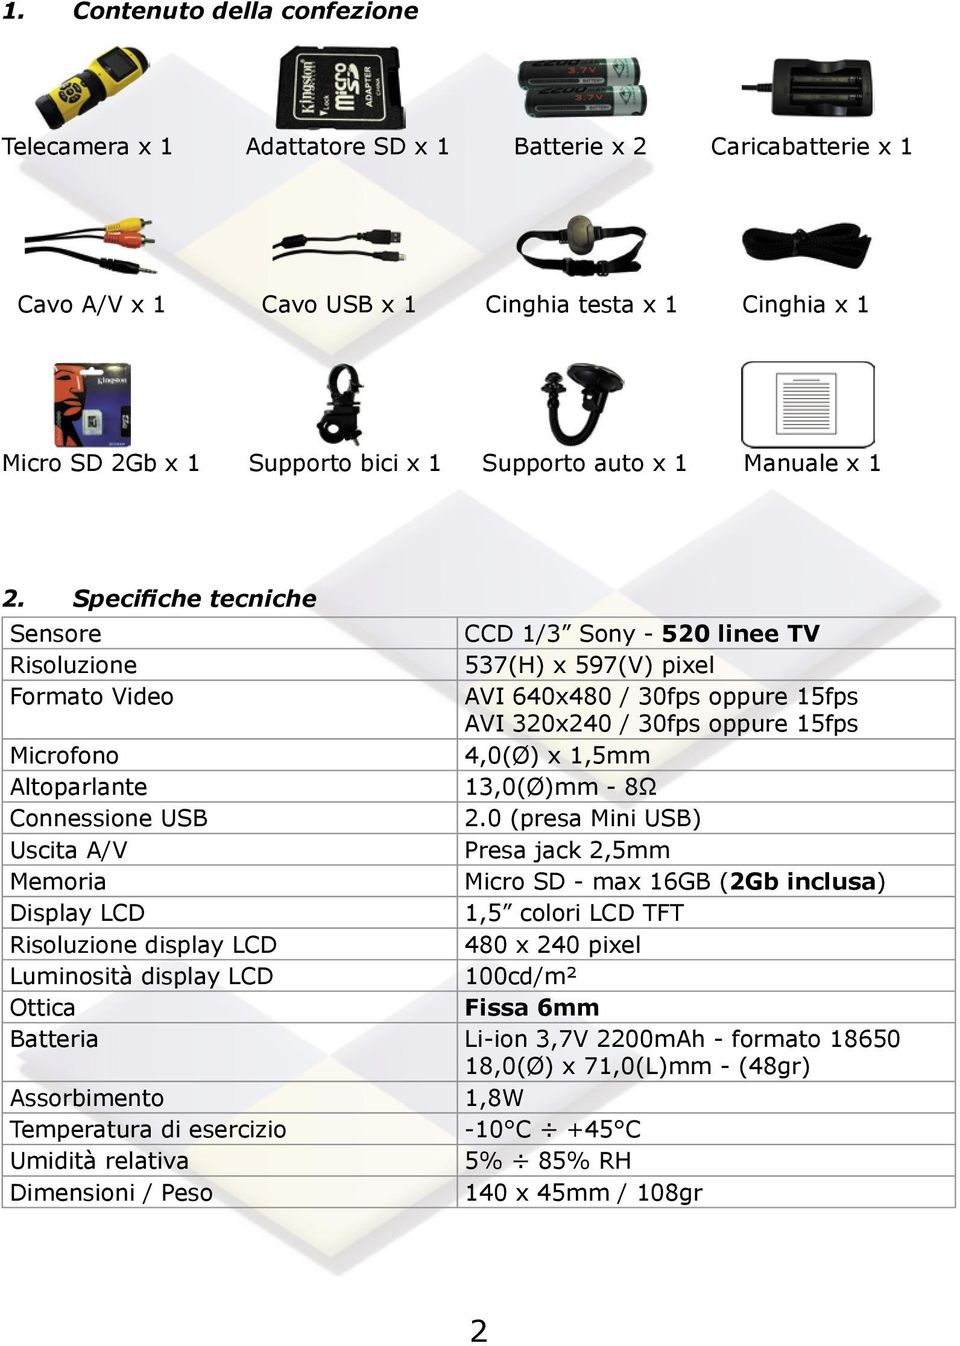 Specifiche tecniche Sensore CCD 1/3 Sony - 520 linee TV Risoluzione 537(H) x 597(V) pixel Formato Video AVI 640x480 / 30fps oppure 15fps AVI 320x240 / 30fps oppure 15fps Microfono 4,0(Ø) x 1,5mm